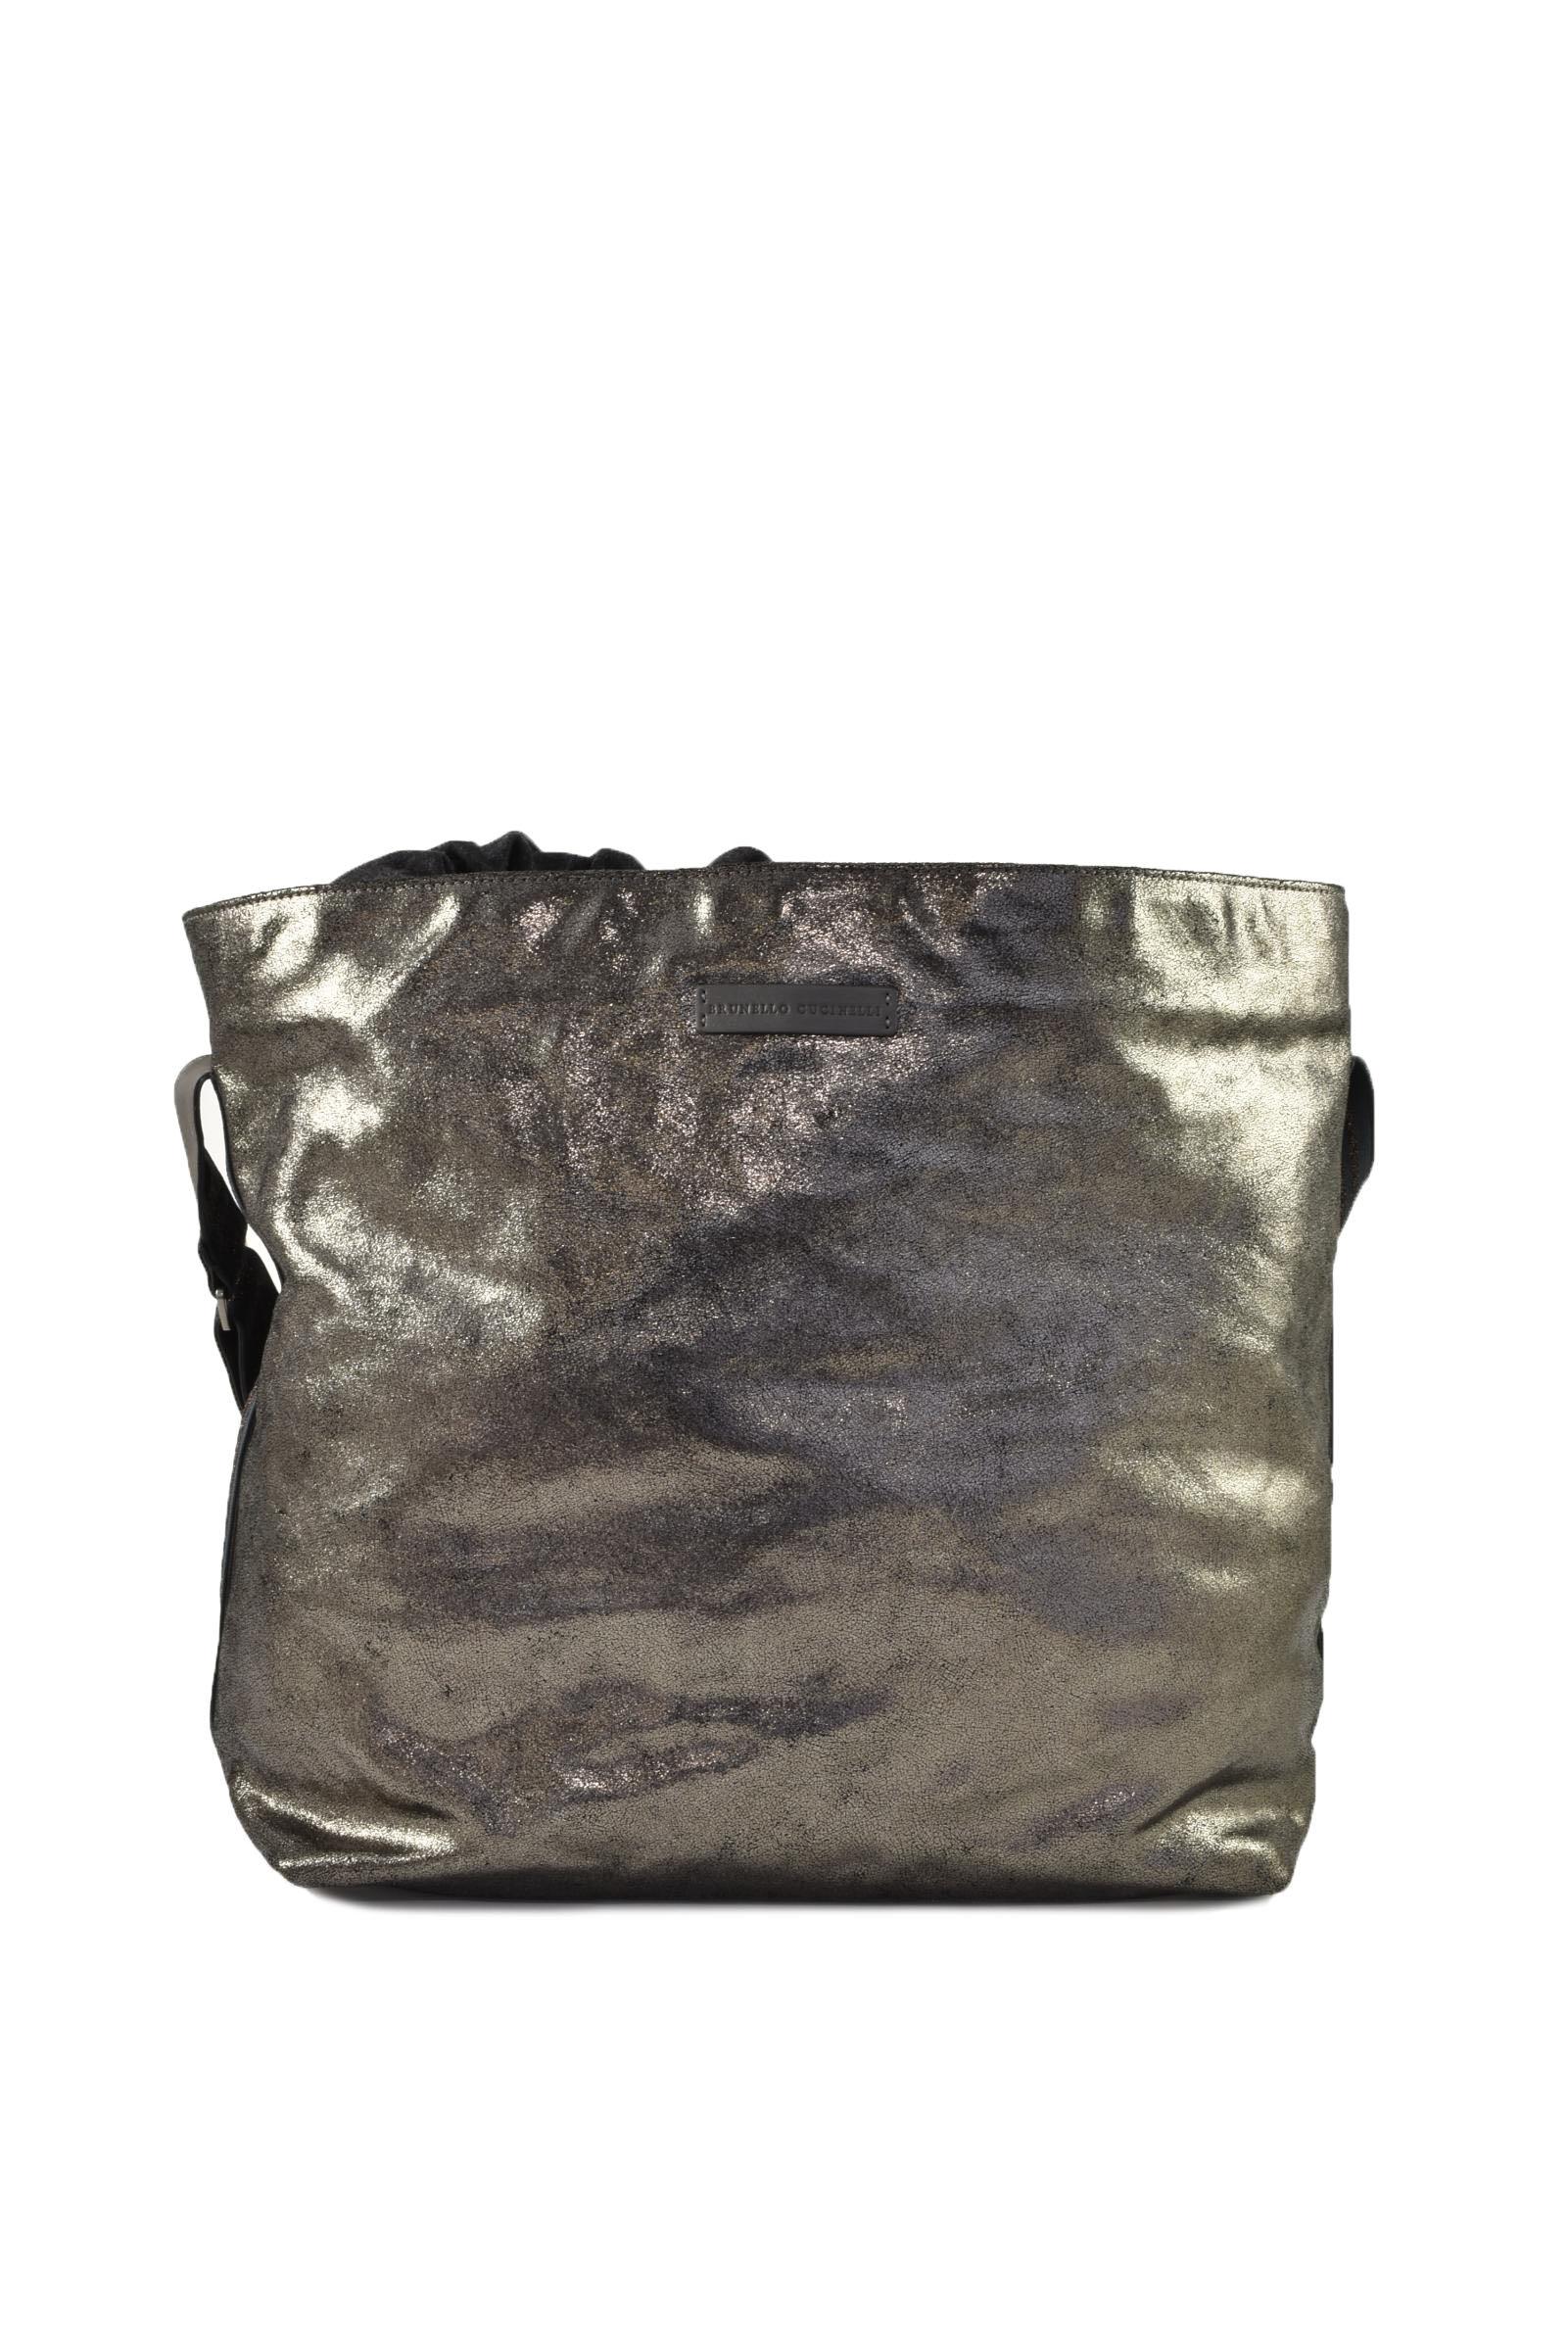 Brunello Cucinelli Women's Anthracite Handbag